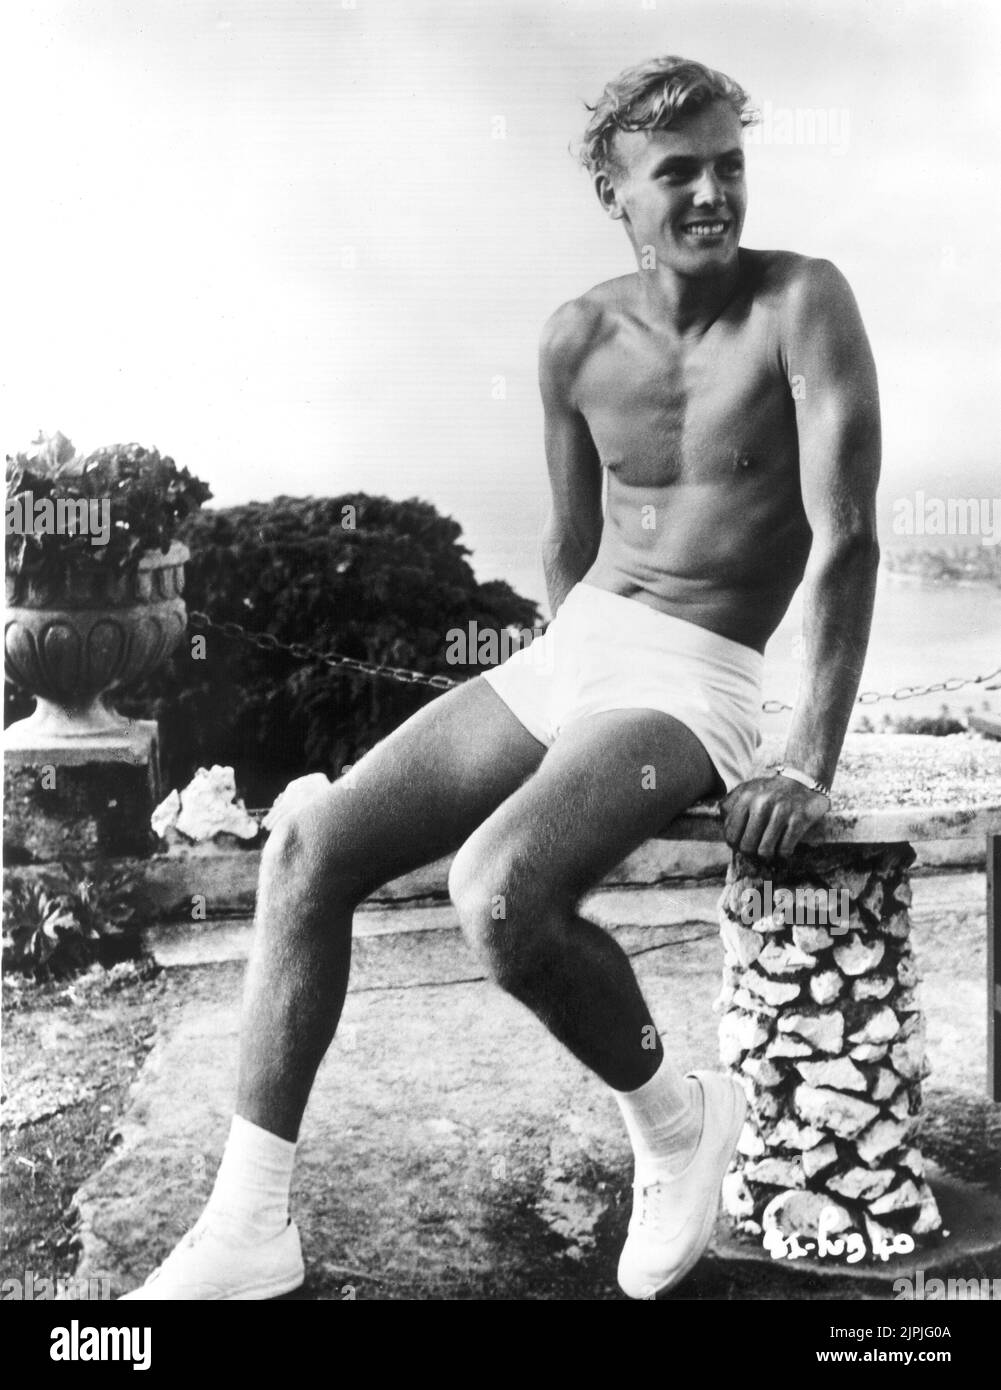 1952 ca.: EL actor estadounidense TAB HUNTER ( nombre real Arthur Gelien , nacido el 11 de julio de 1931 Nueva York ) - CINE - attore cinematografico - retrato - ritratto - pantalones - scarpe da ginnastica tenis - zapatos de fitness - símbolo de sexo - símbolo de sexo - sexsymbol - hollywood hunk - GAY - homosexual - homosexualidad - omosessuale - omosessualità - torso nudo - barechested - beefcake --- Archivio GBB Foto de stock